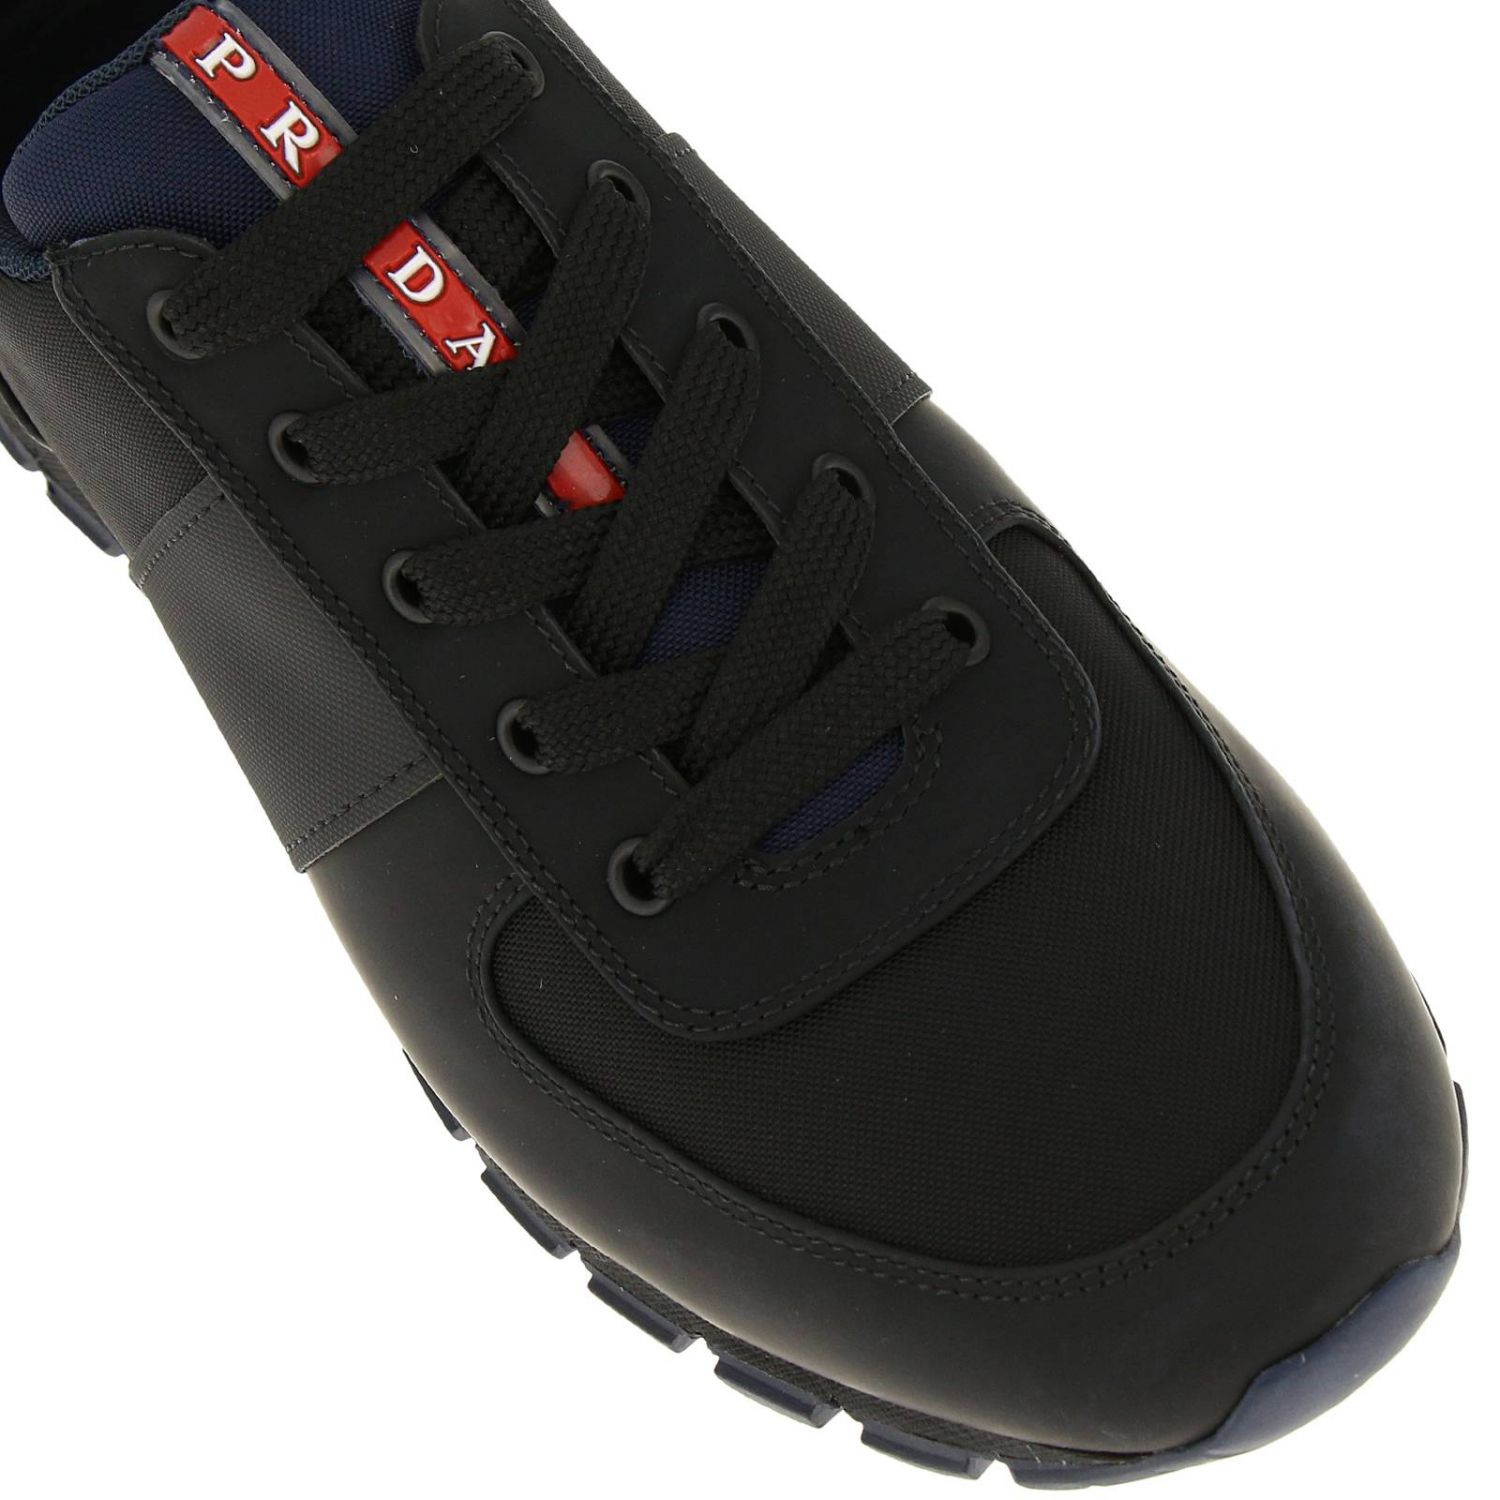 PRADA: Shoes men | Sneakers Prada Men Black | Sneakers Prada 4E2718 ...